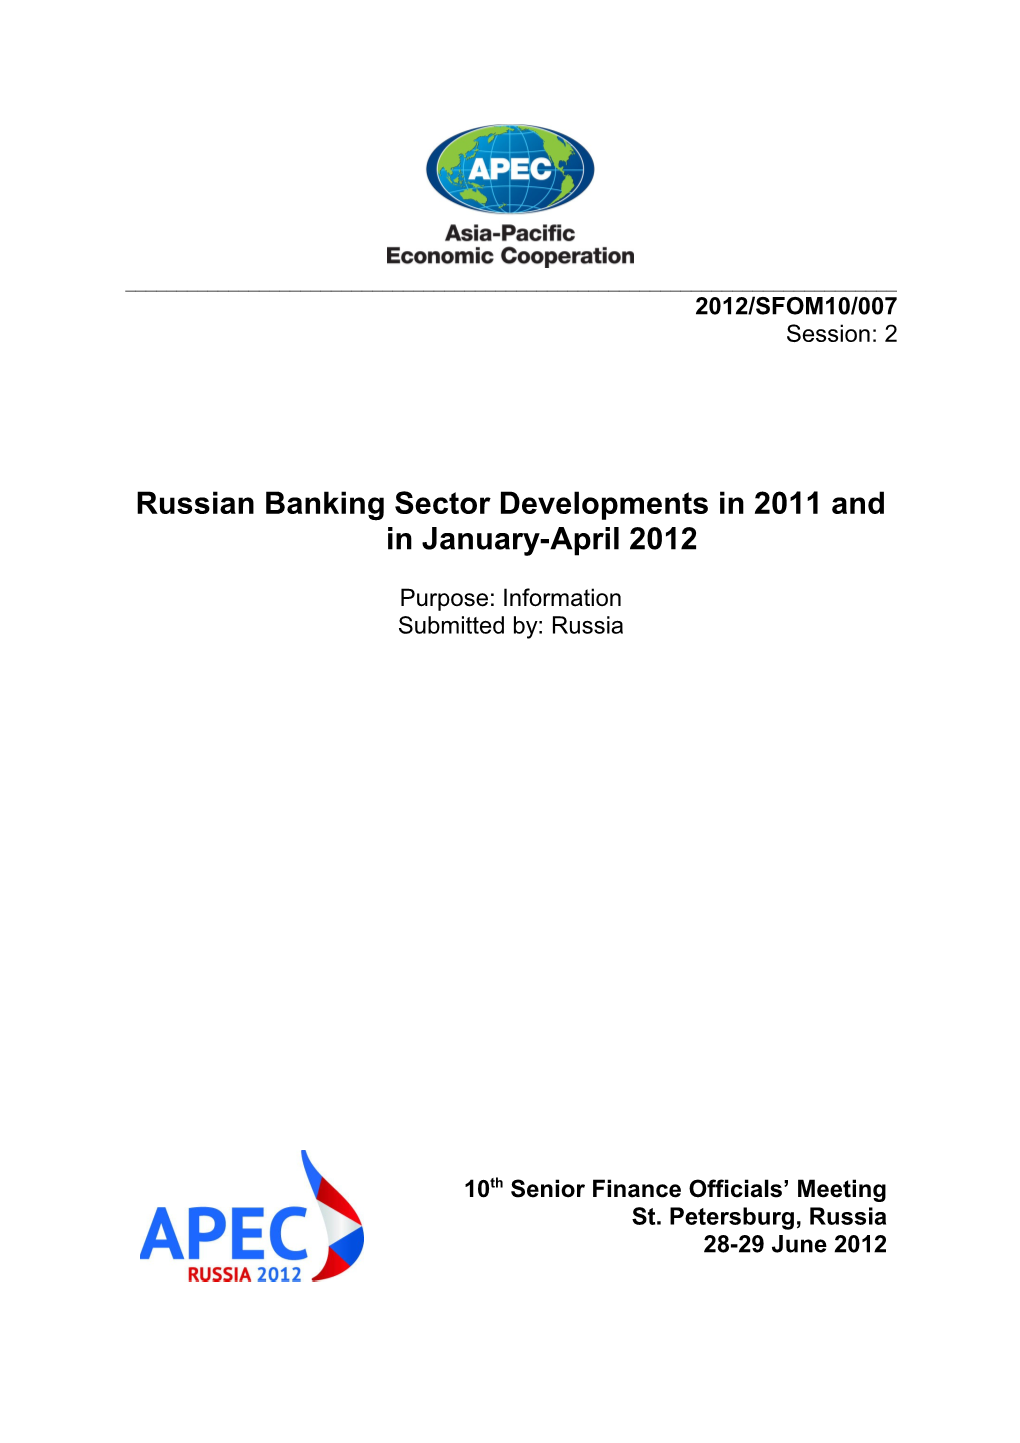 APEC Meeting Documents s3